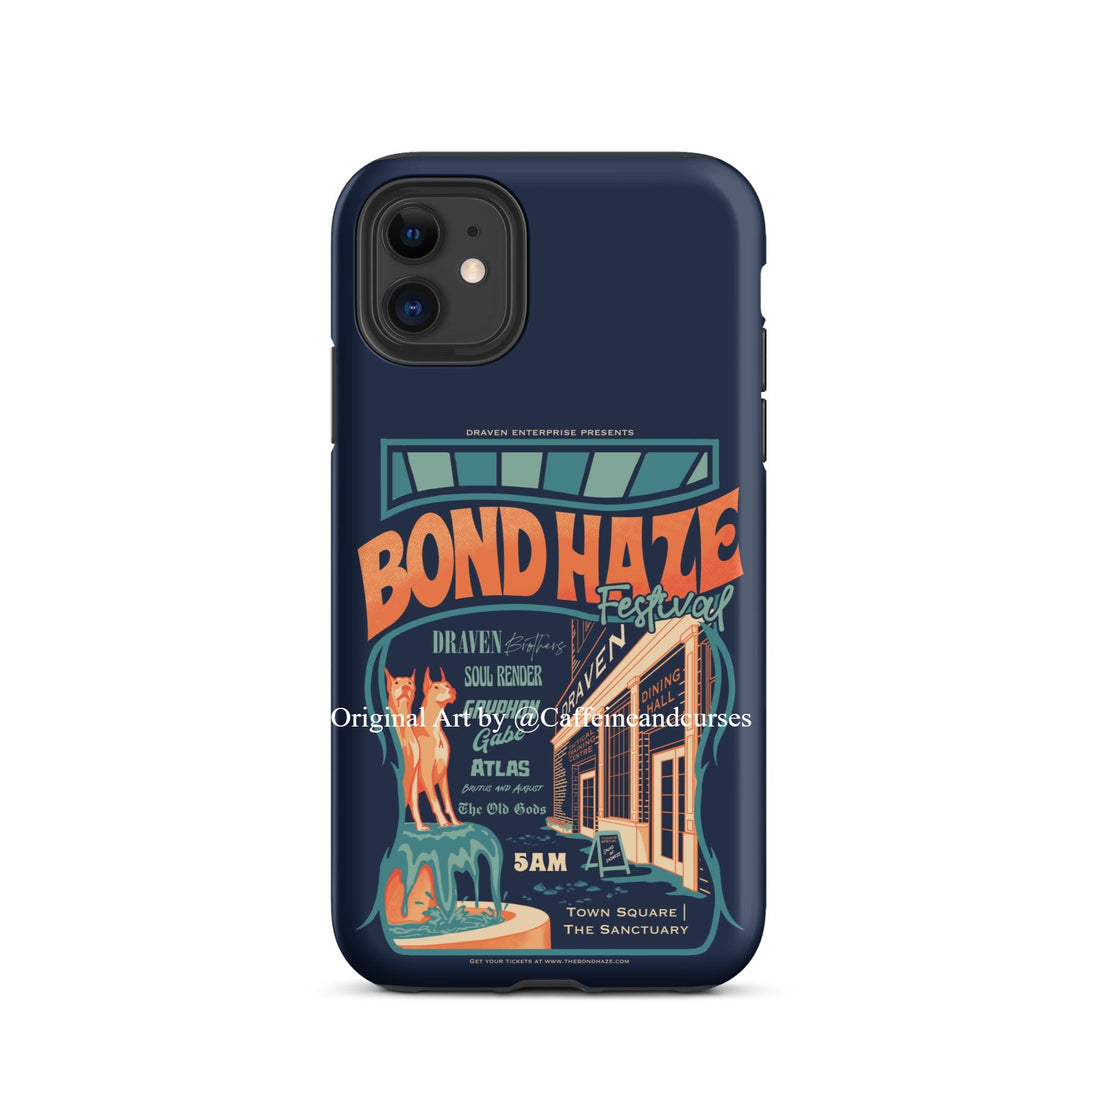 BOND HAZE FESTIVAL IPHONE CASE | THE BONDS THAT TIE